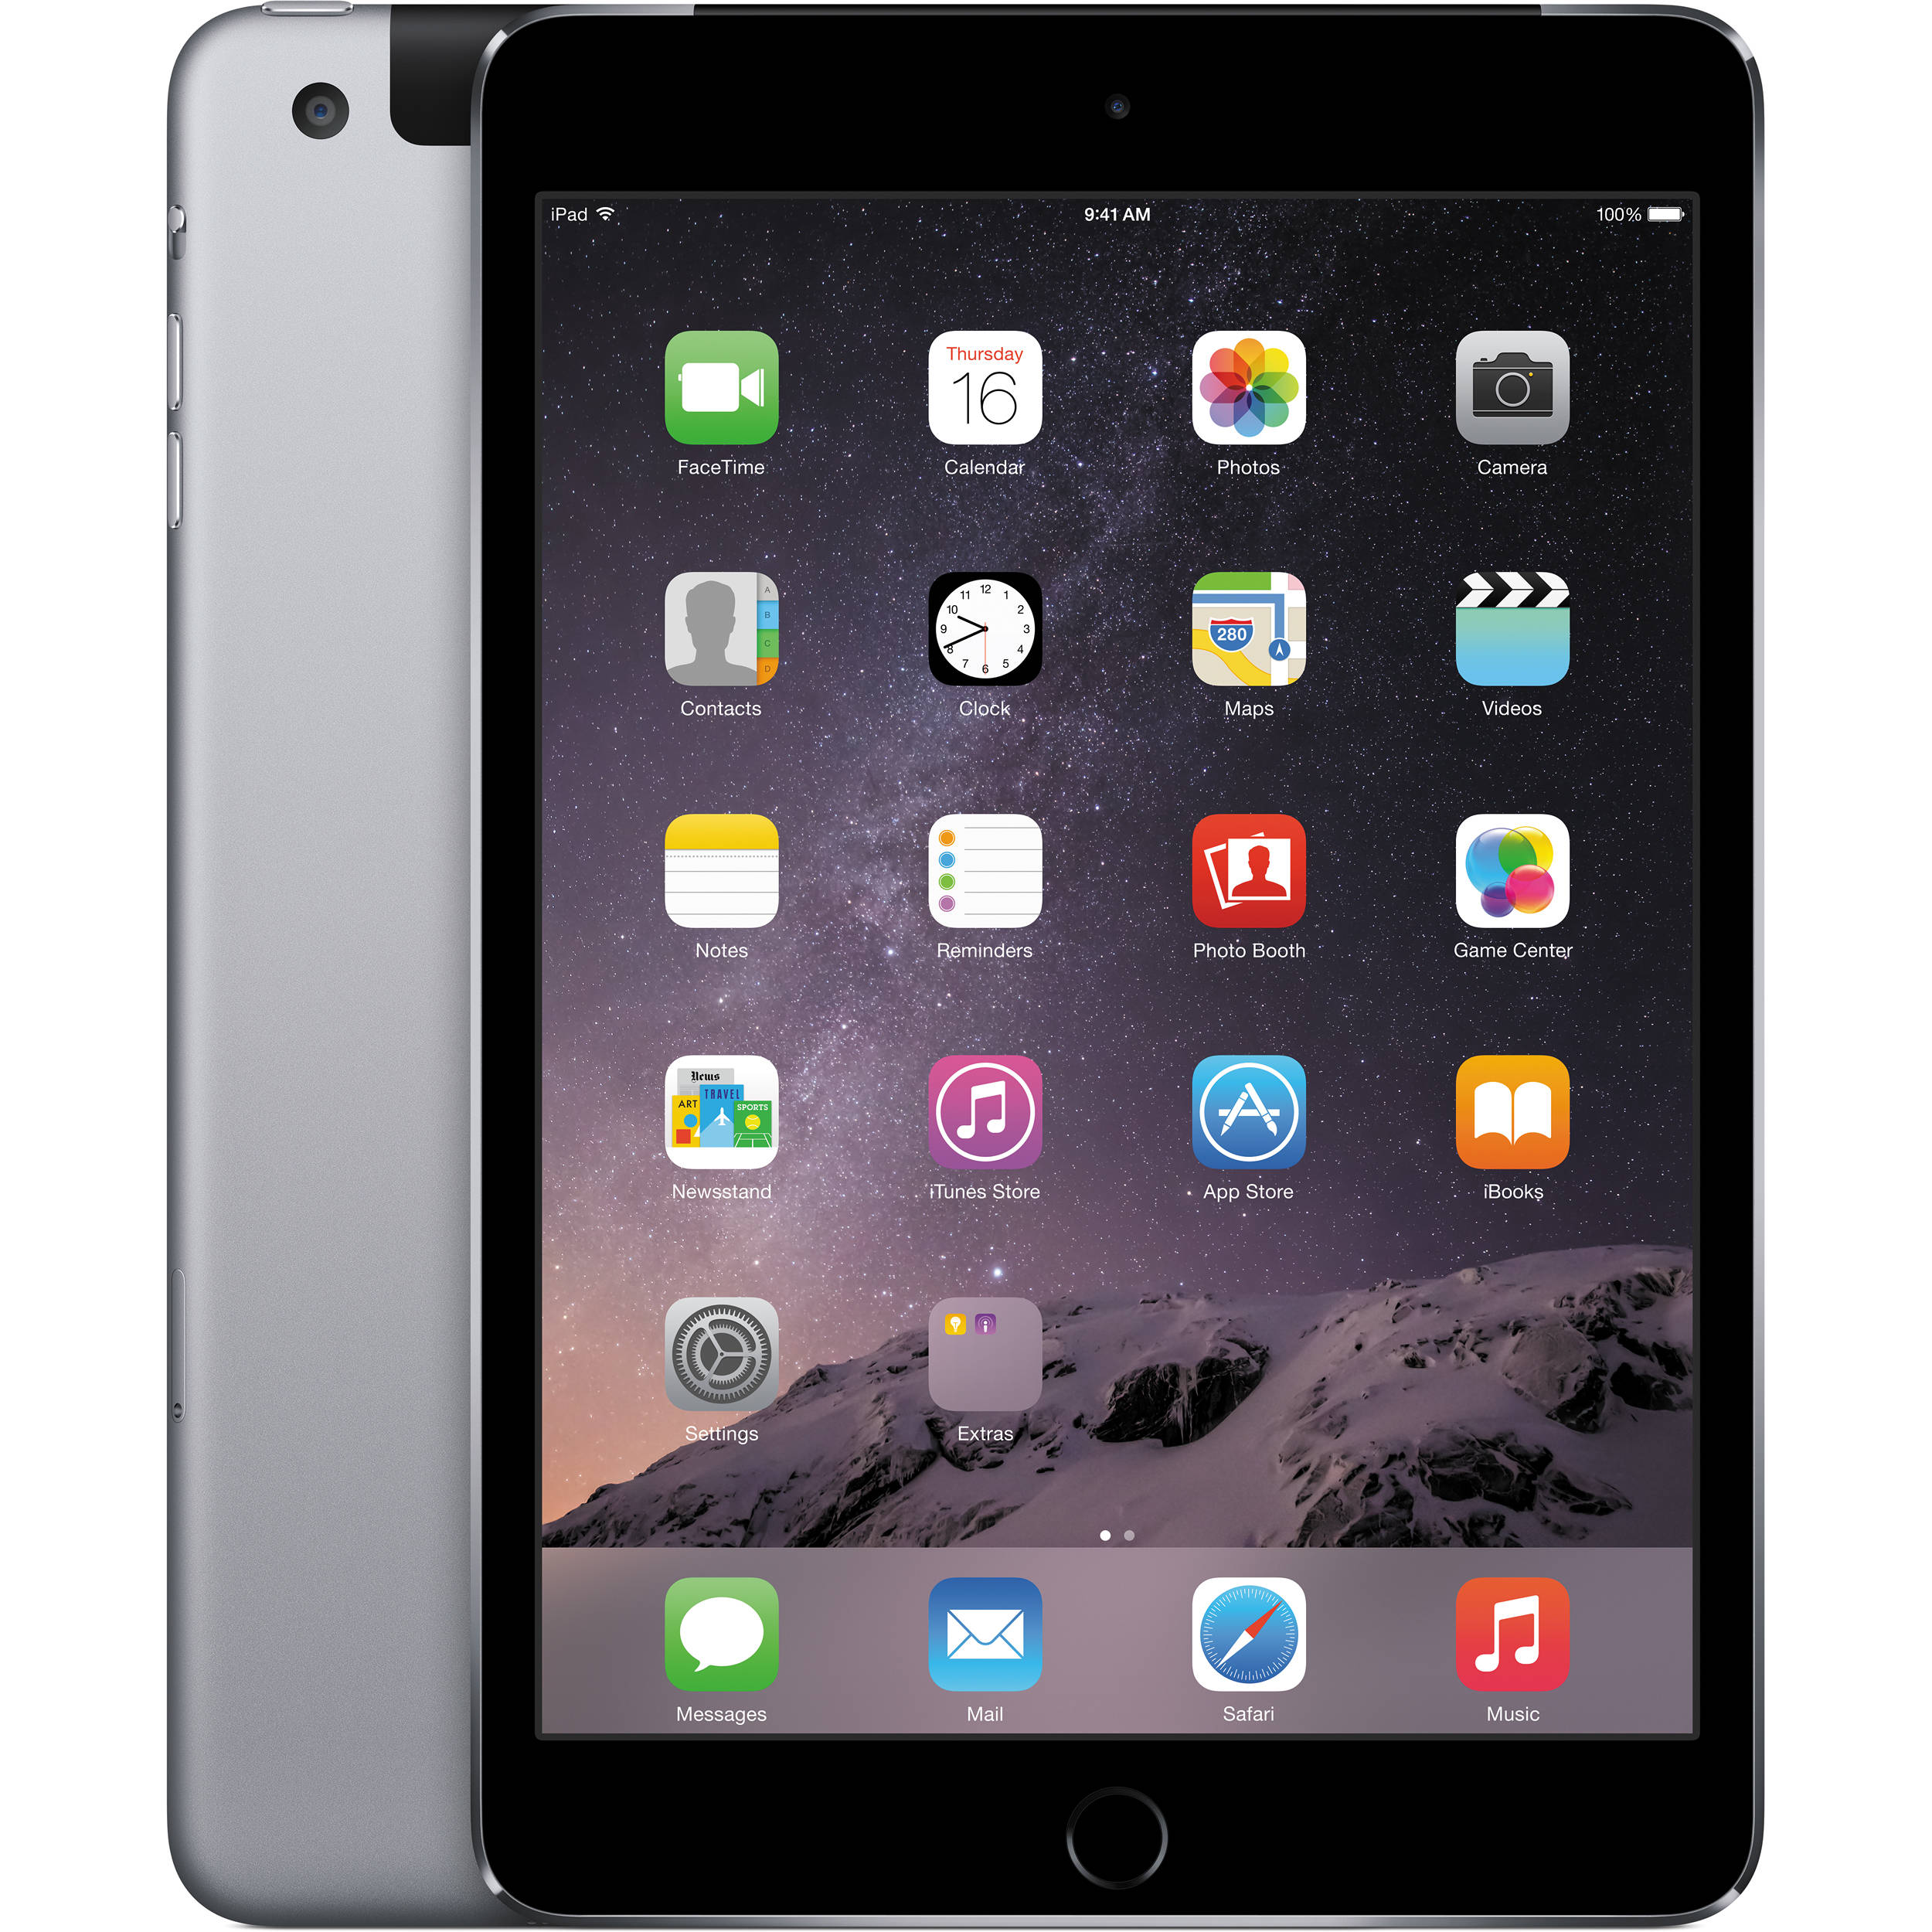 Apple iPad 3 Wi-Fi + Cellular Özellikleri - Technopat Veritabanı